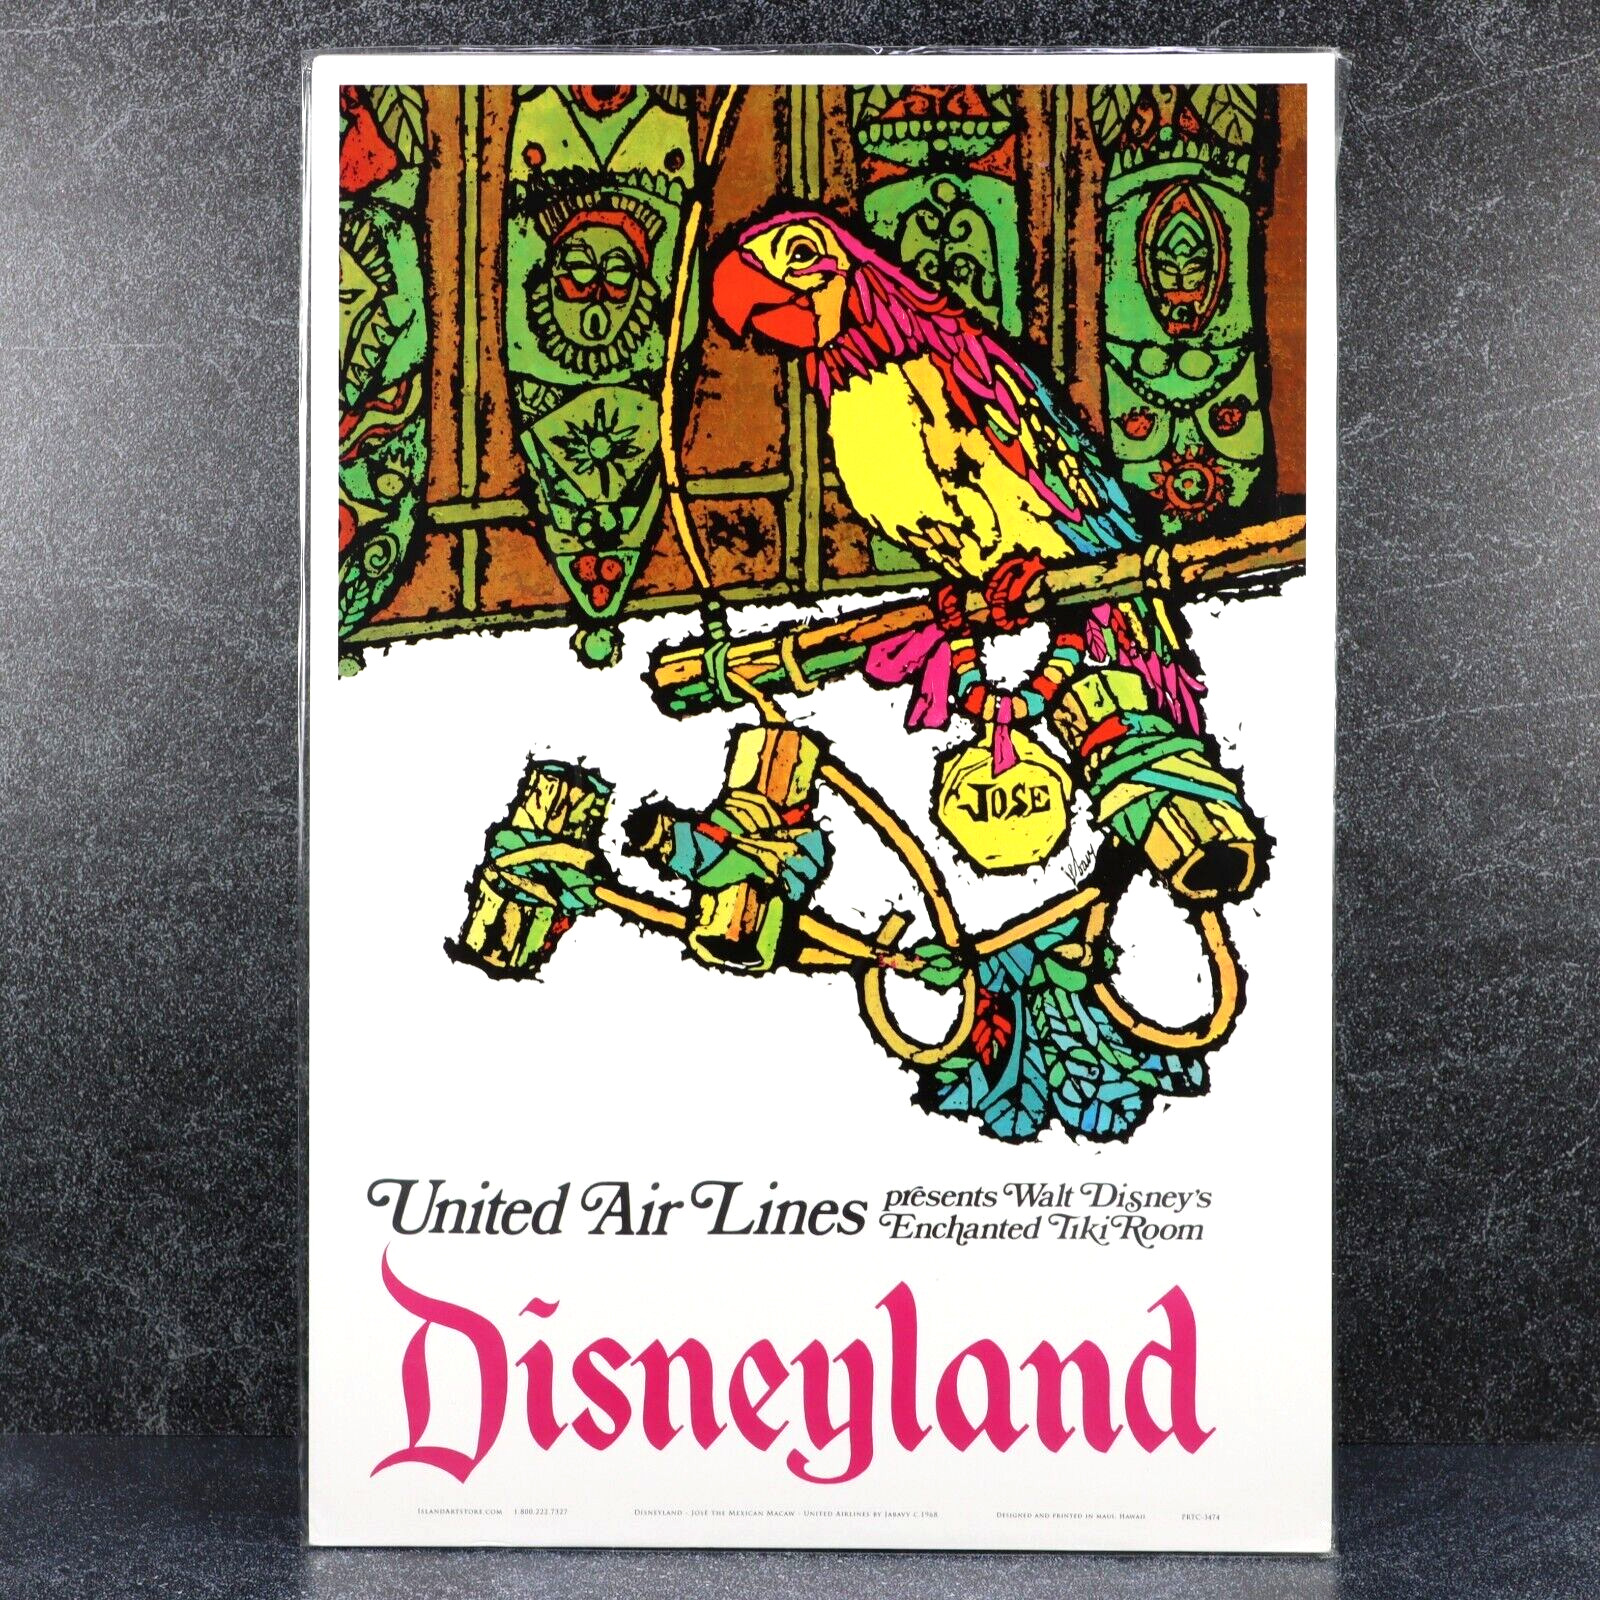 Disneyland United Airlines Ad Print Pacific Island Art Tiki Room Jabavy Sealed